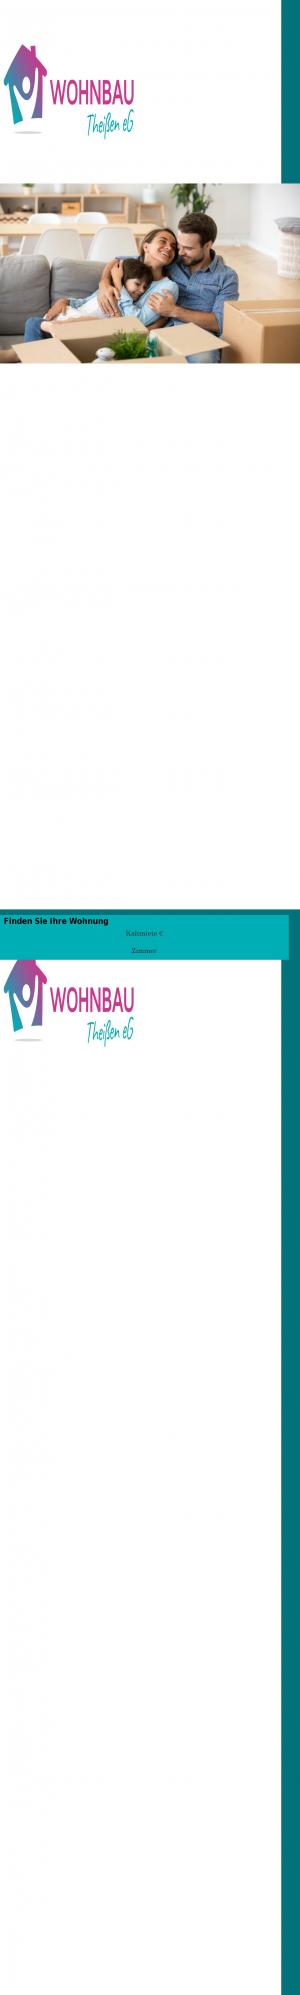 www.wohnbautheissen.de